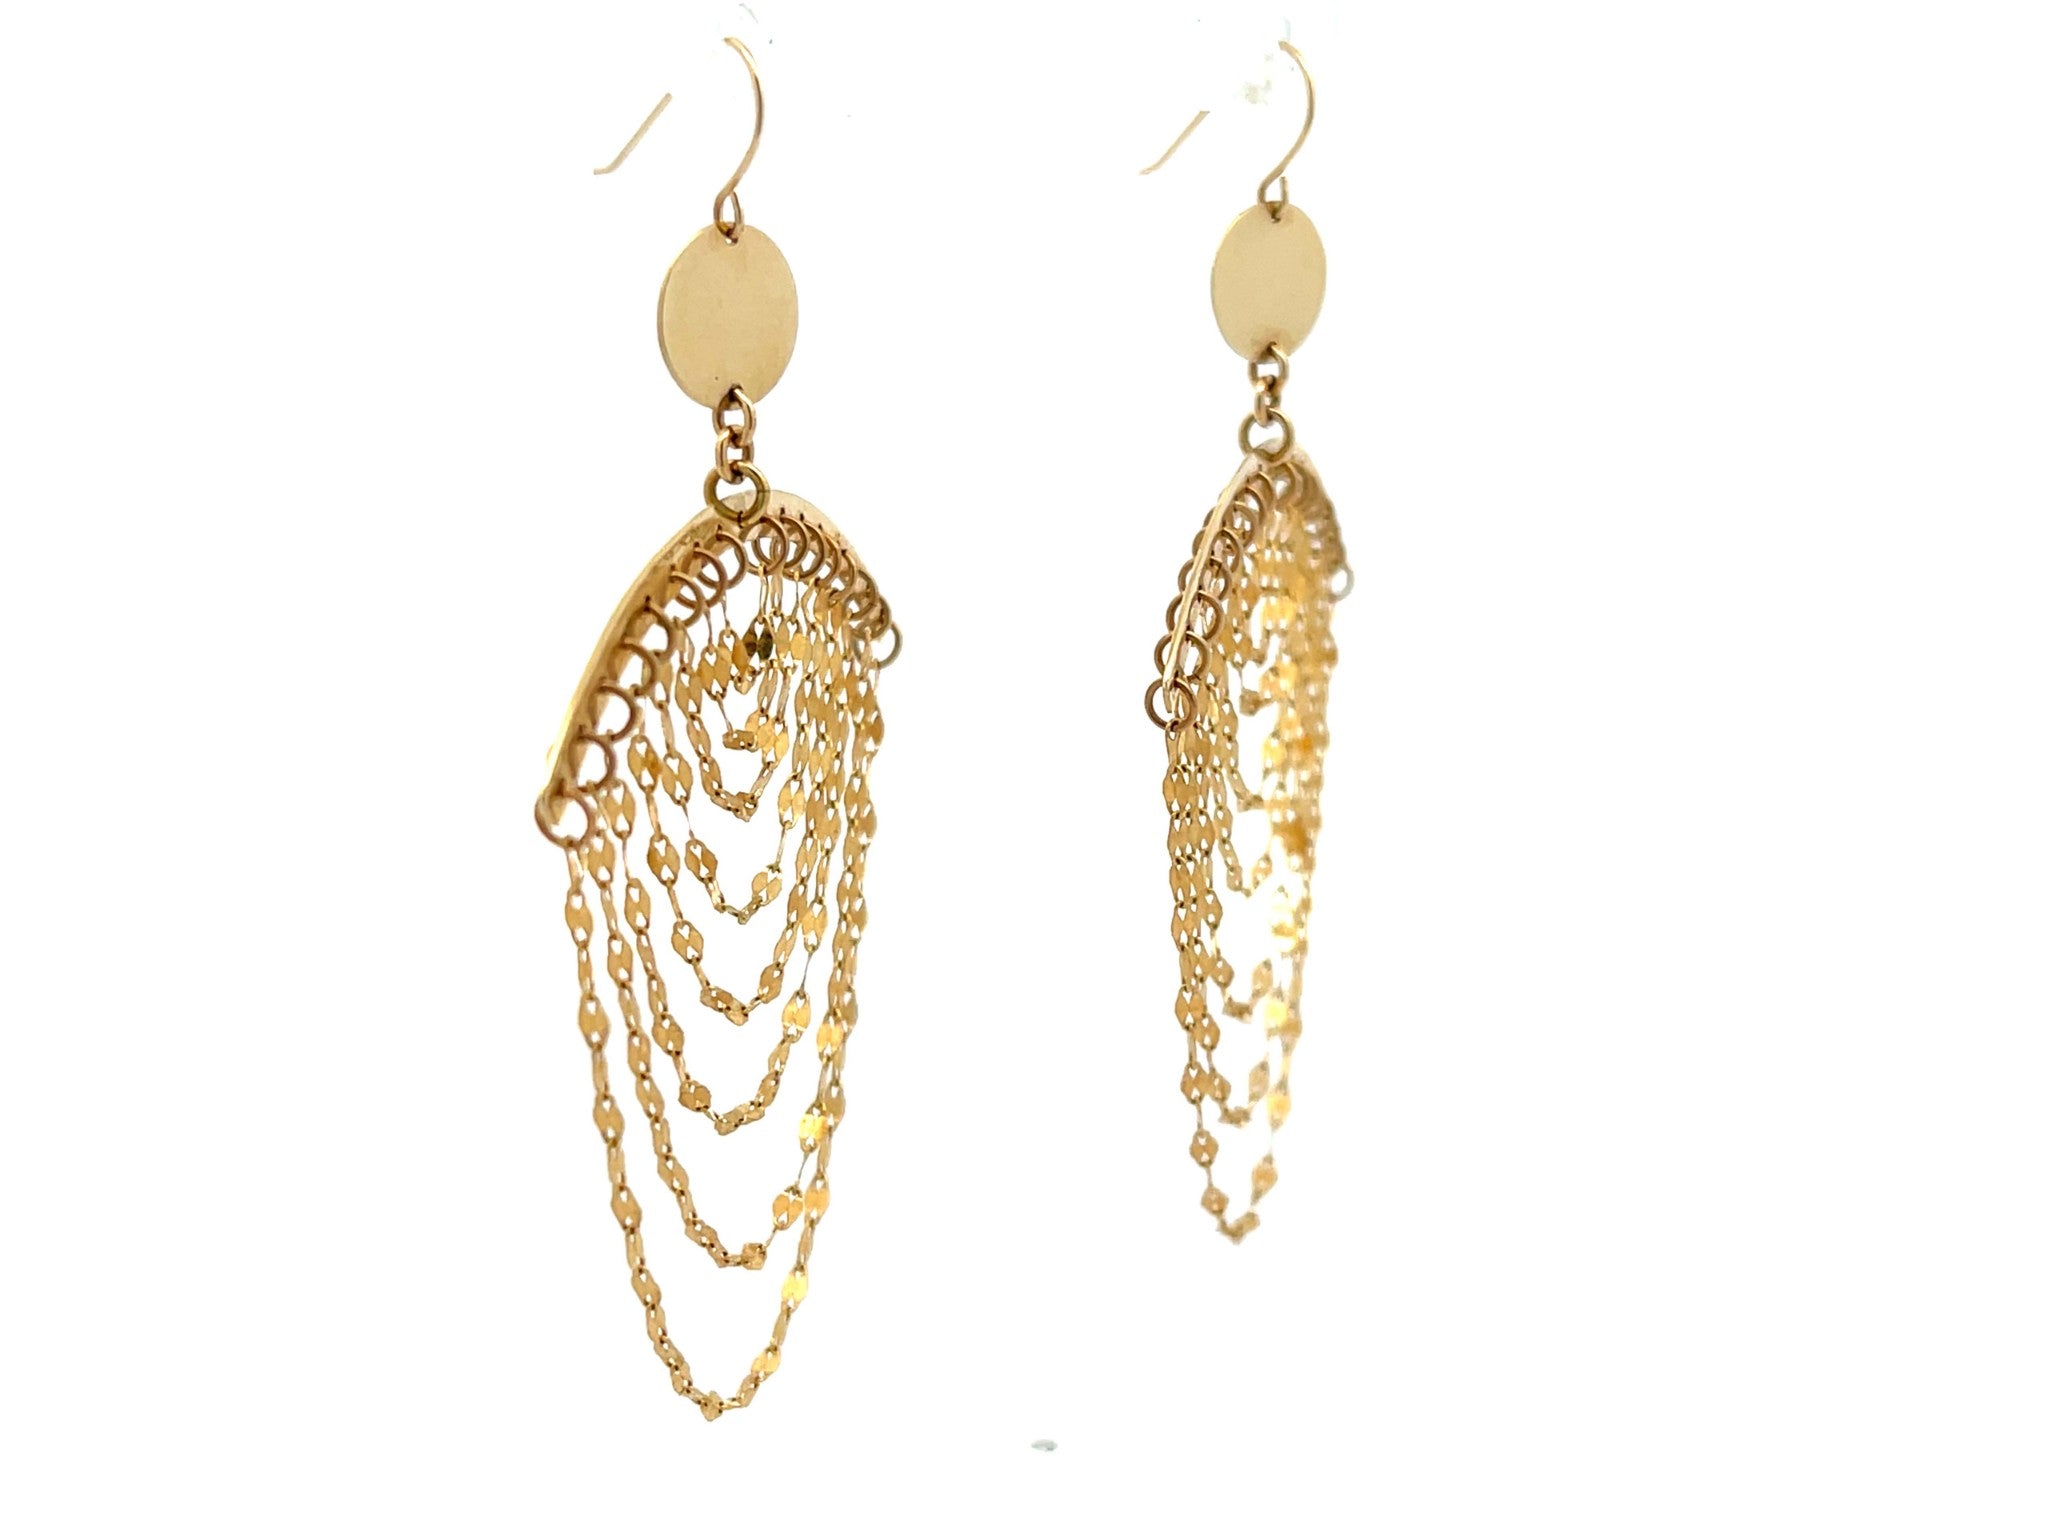 Lana Cascade Chandelier Earrings in 14K Yellow Gold